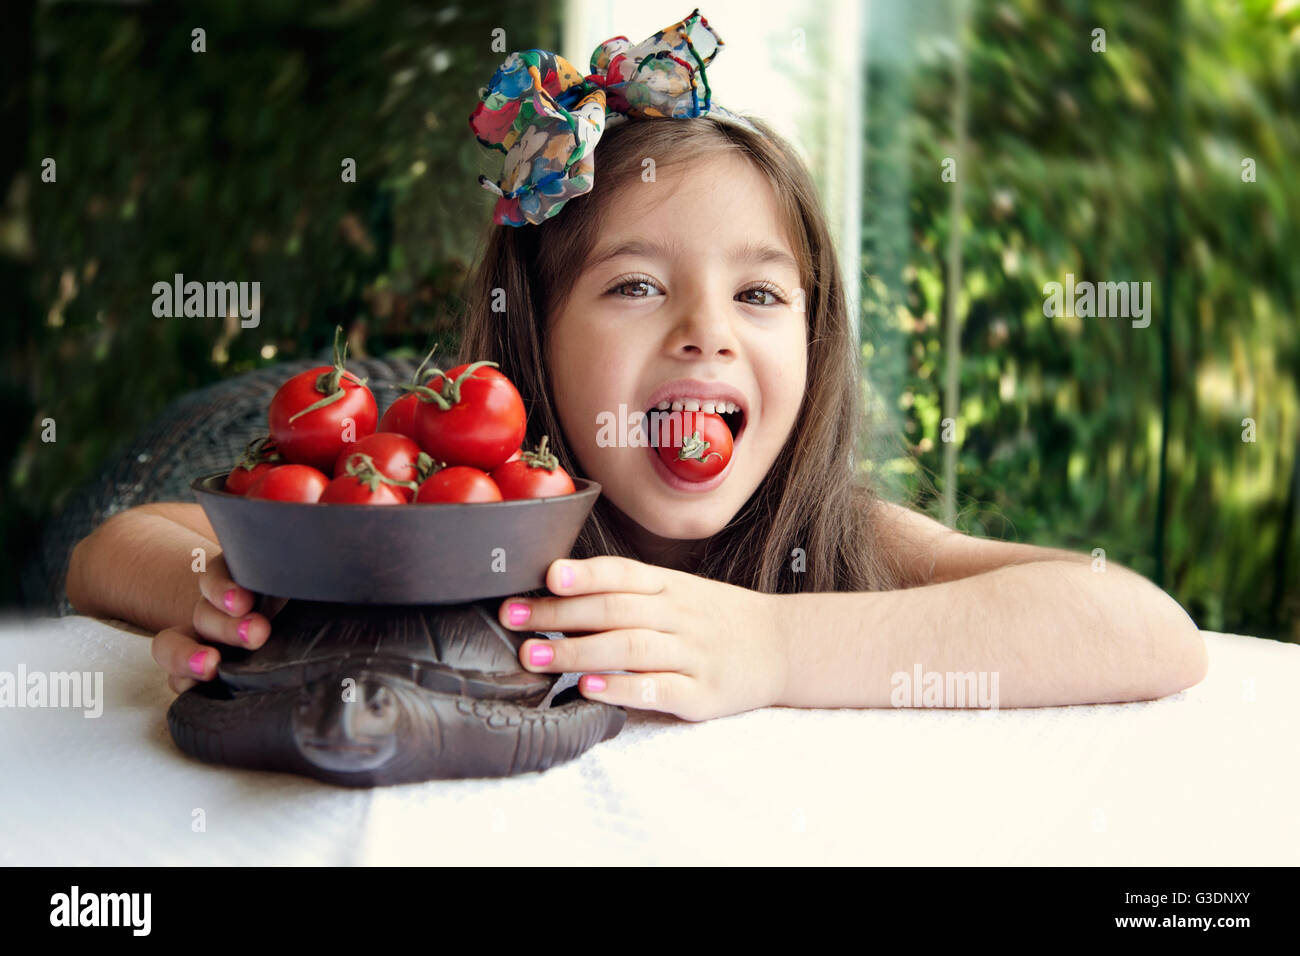 Girl biting cherry tomato Stock Photo